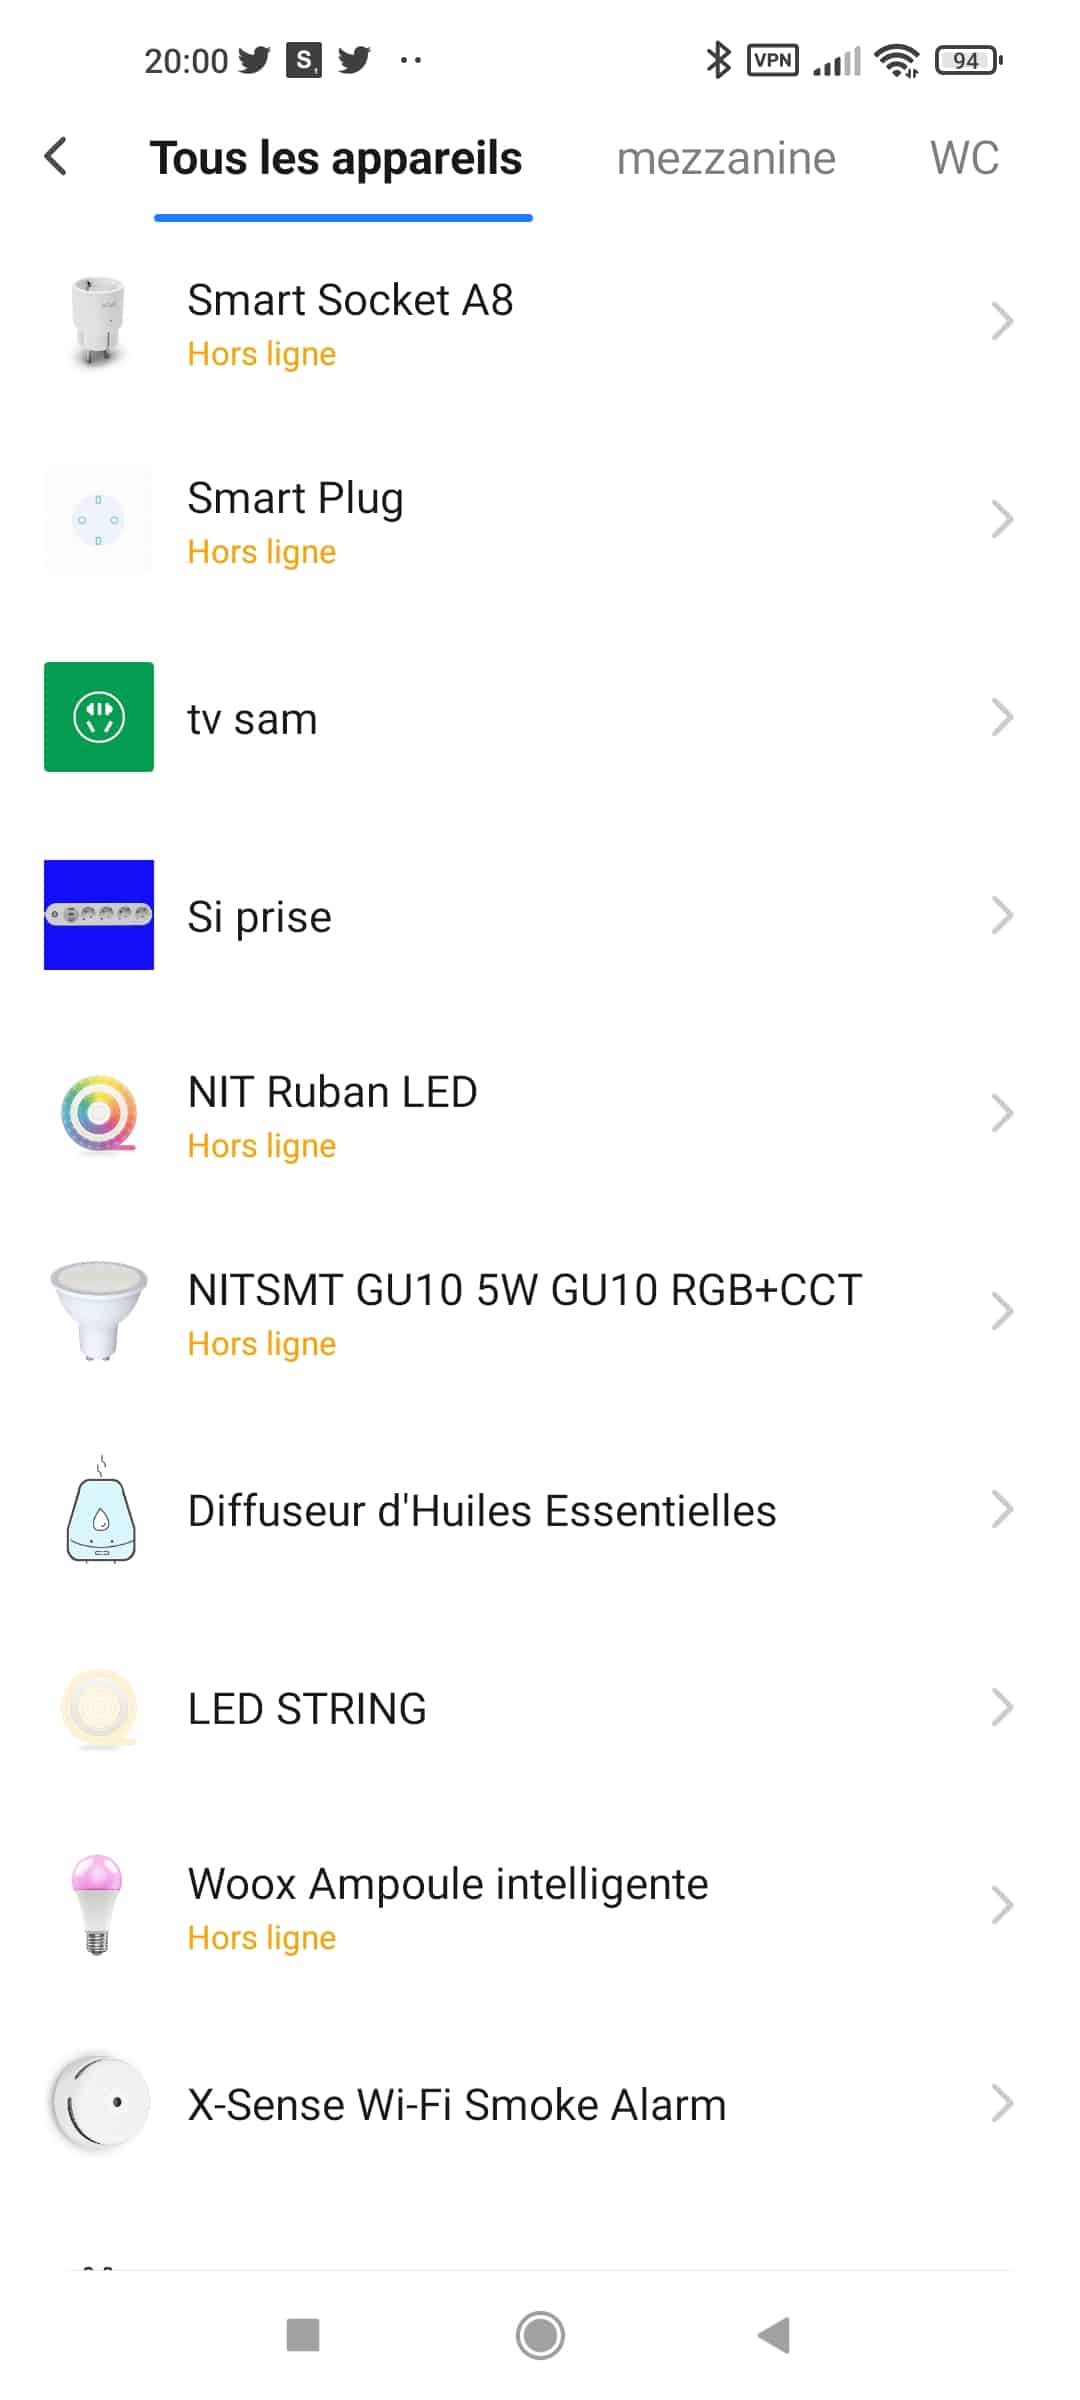 NOUS - Box domotique Zigbee 3.0 compatible SmartLife TUYA